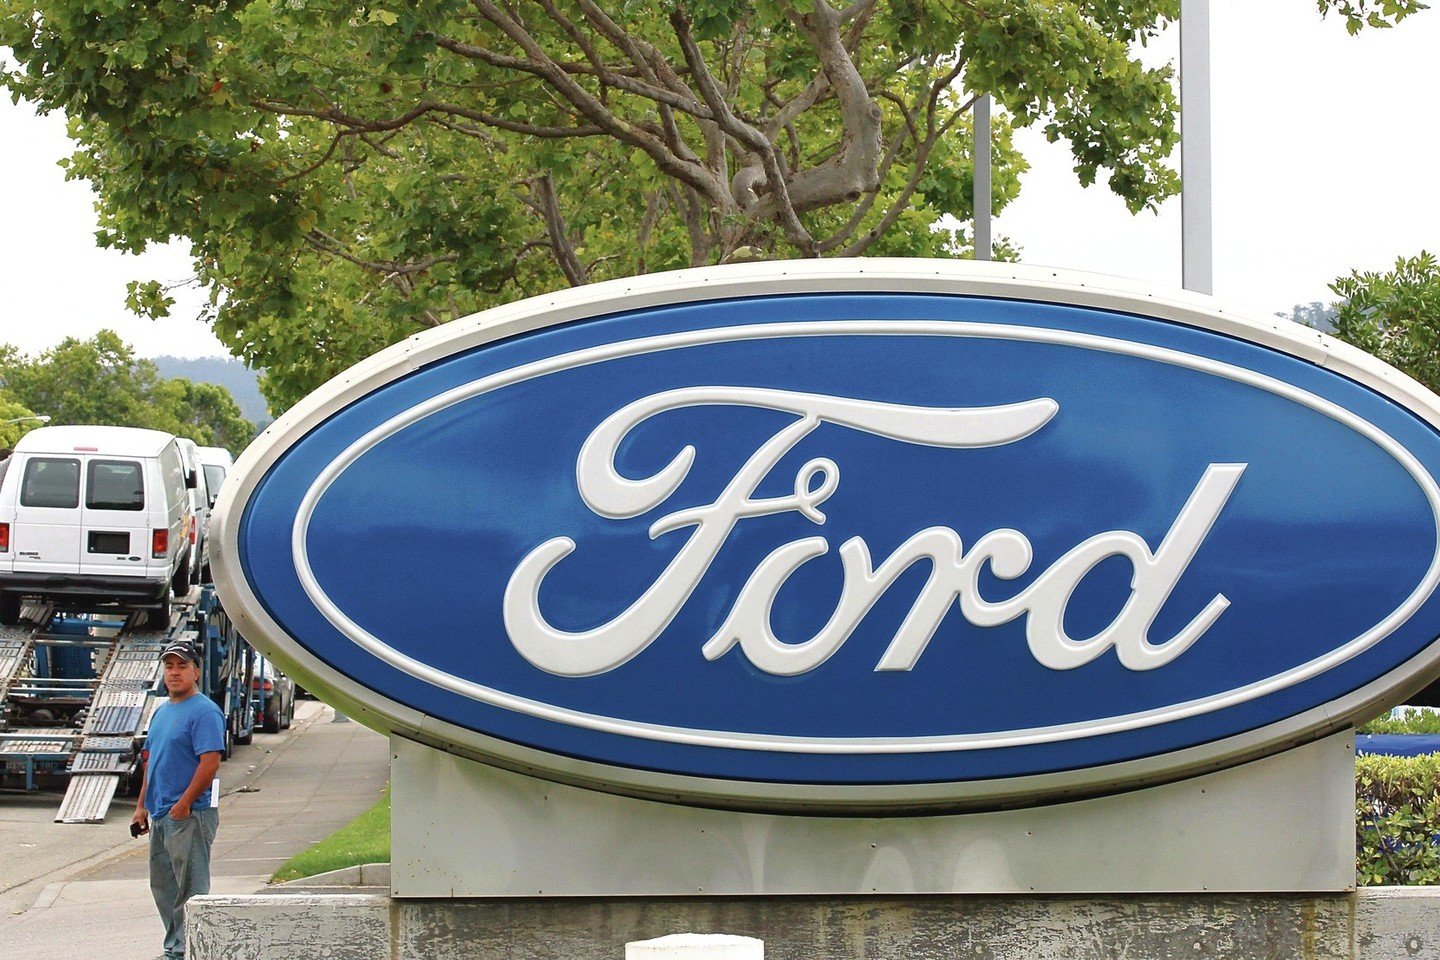 Pirmoji vilniečio G.Drukteinio investicija į akcijas buvo įsigytas „Ford Motor Company“ paketas, mat vyras tvirtino nuolat besinaudojantis šiais automobiliais.